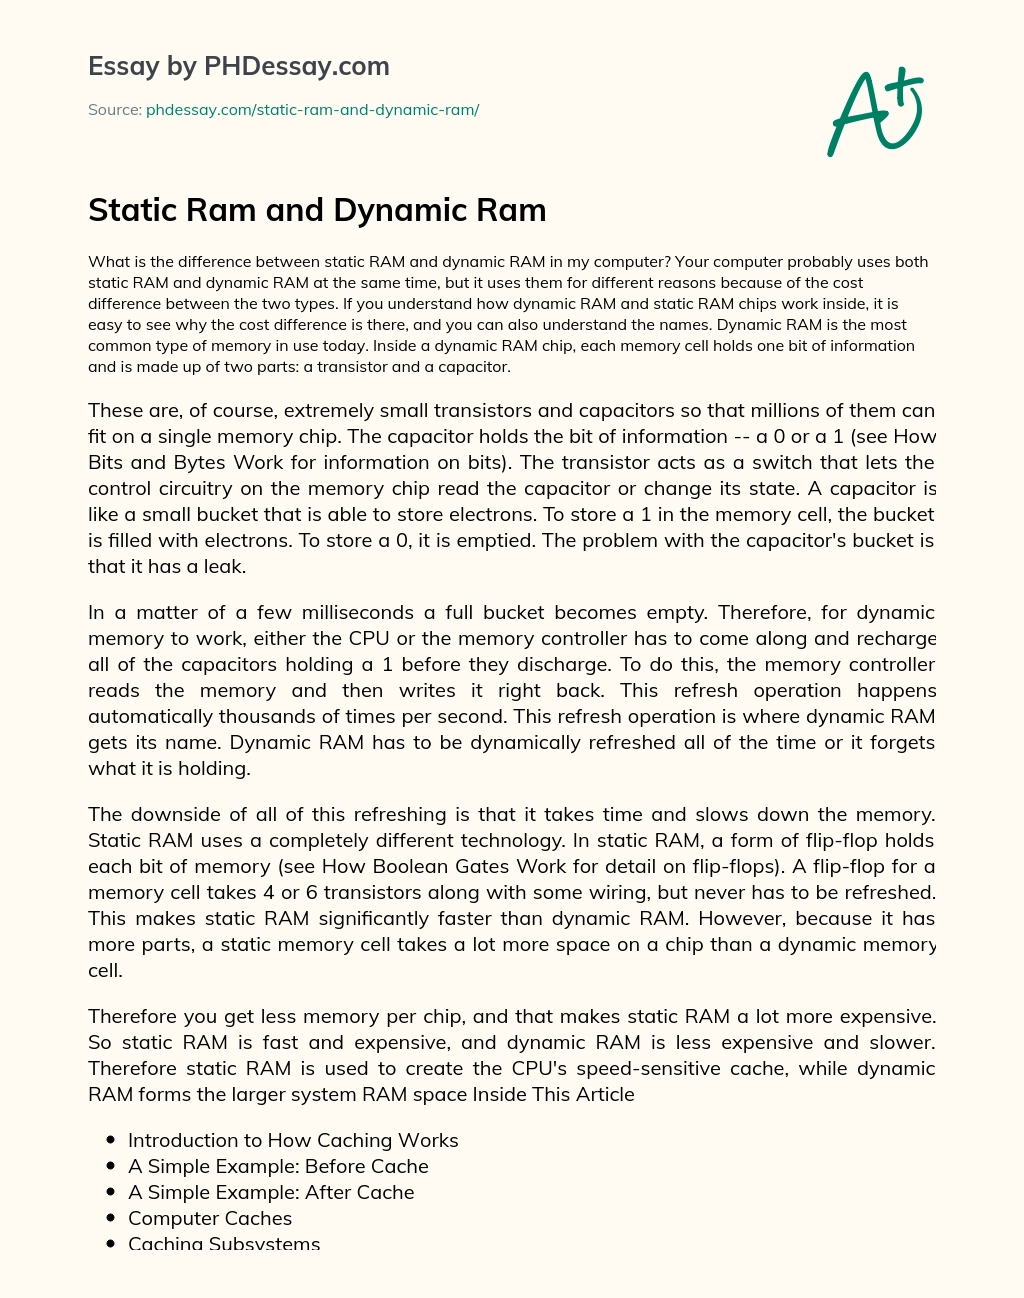 Static Ram and Dynamic Ram essay